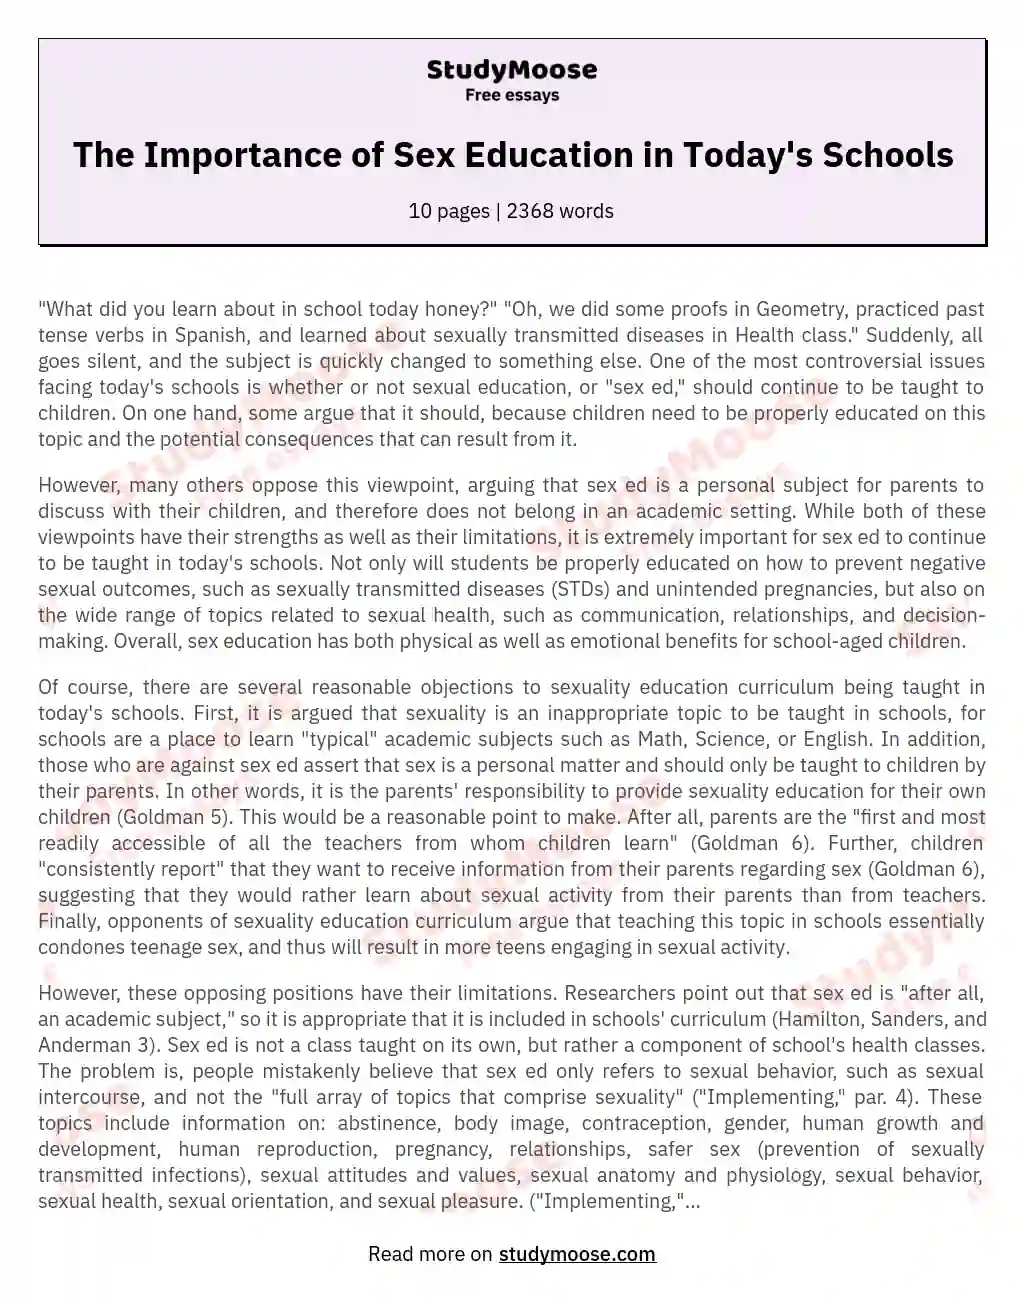 sex education in schools essay